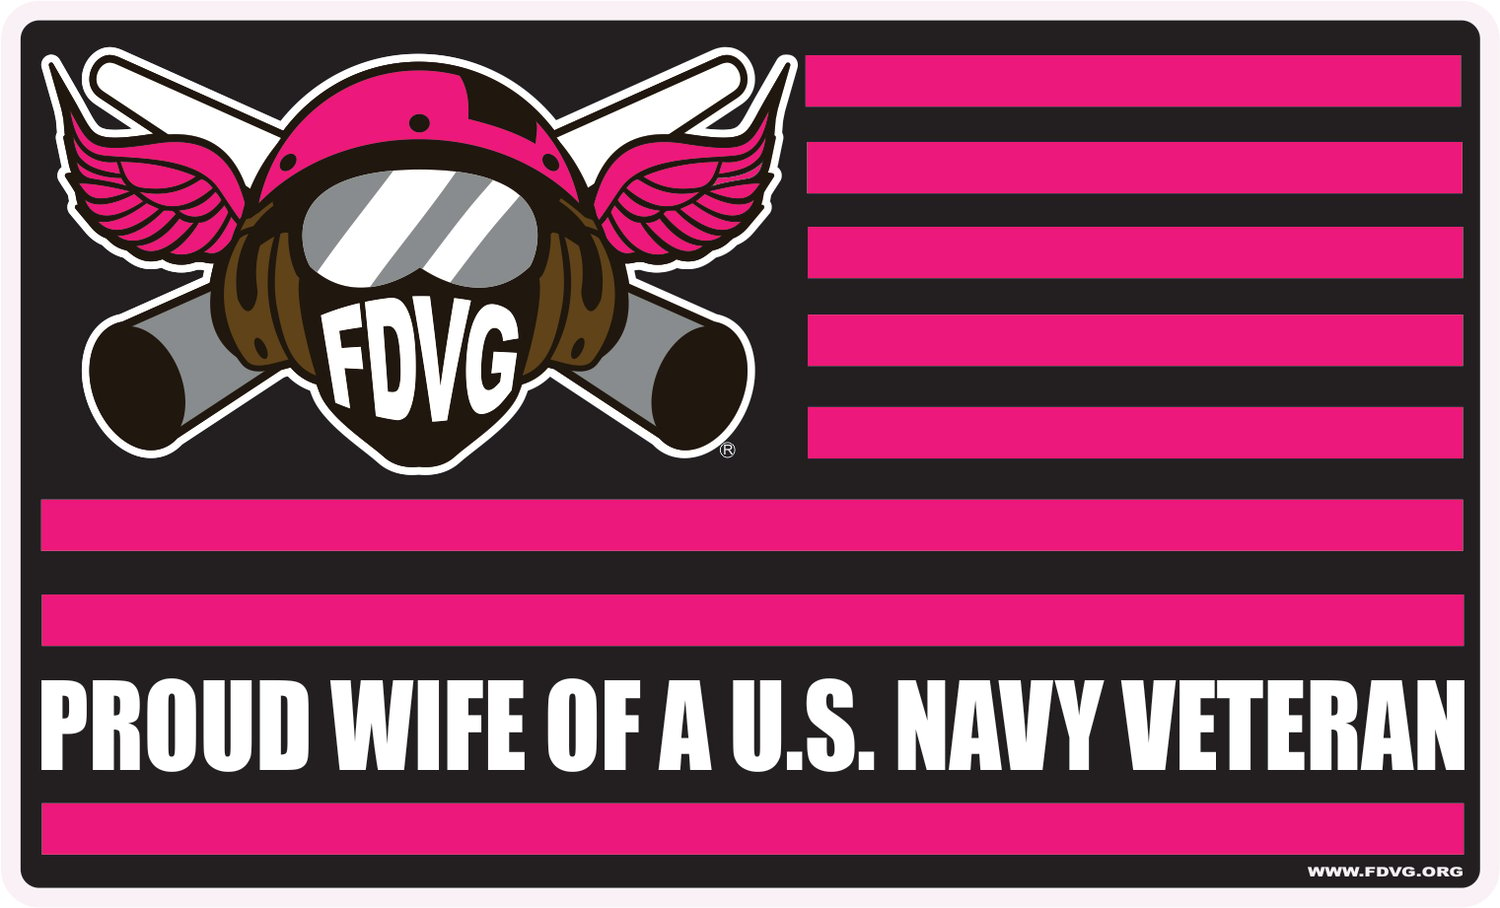 Image of "PROUD WIFE" of a U.S. Navy Veteran